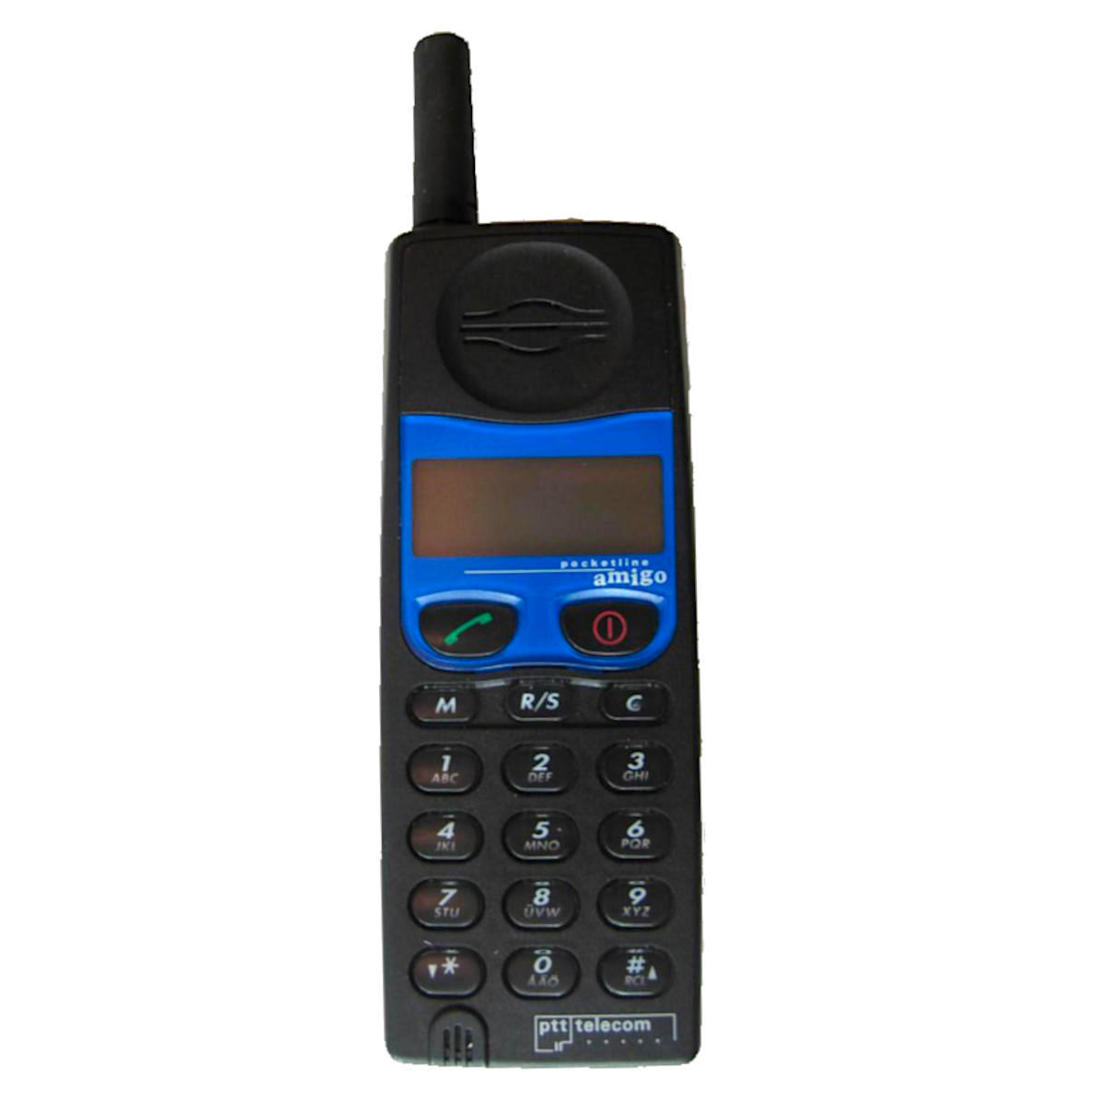 Ericsson Pocketline Amigo